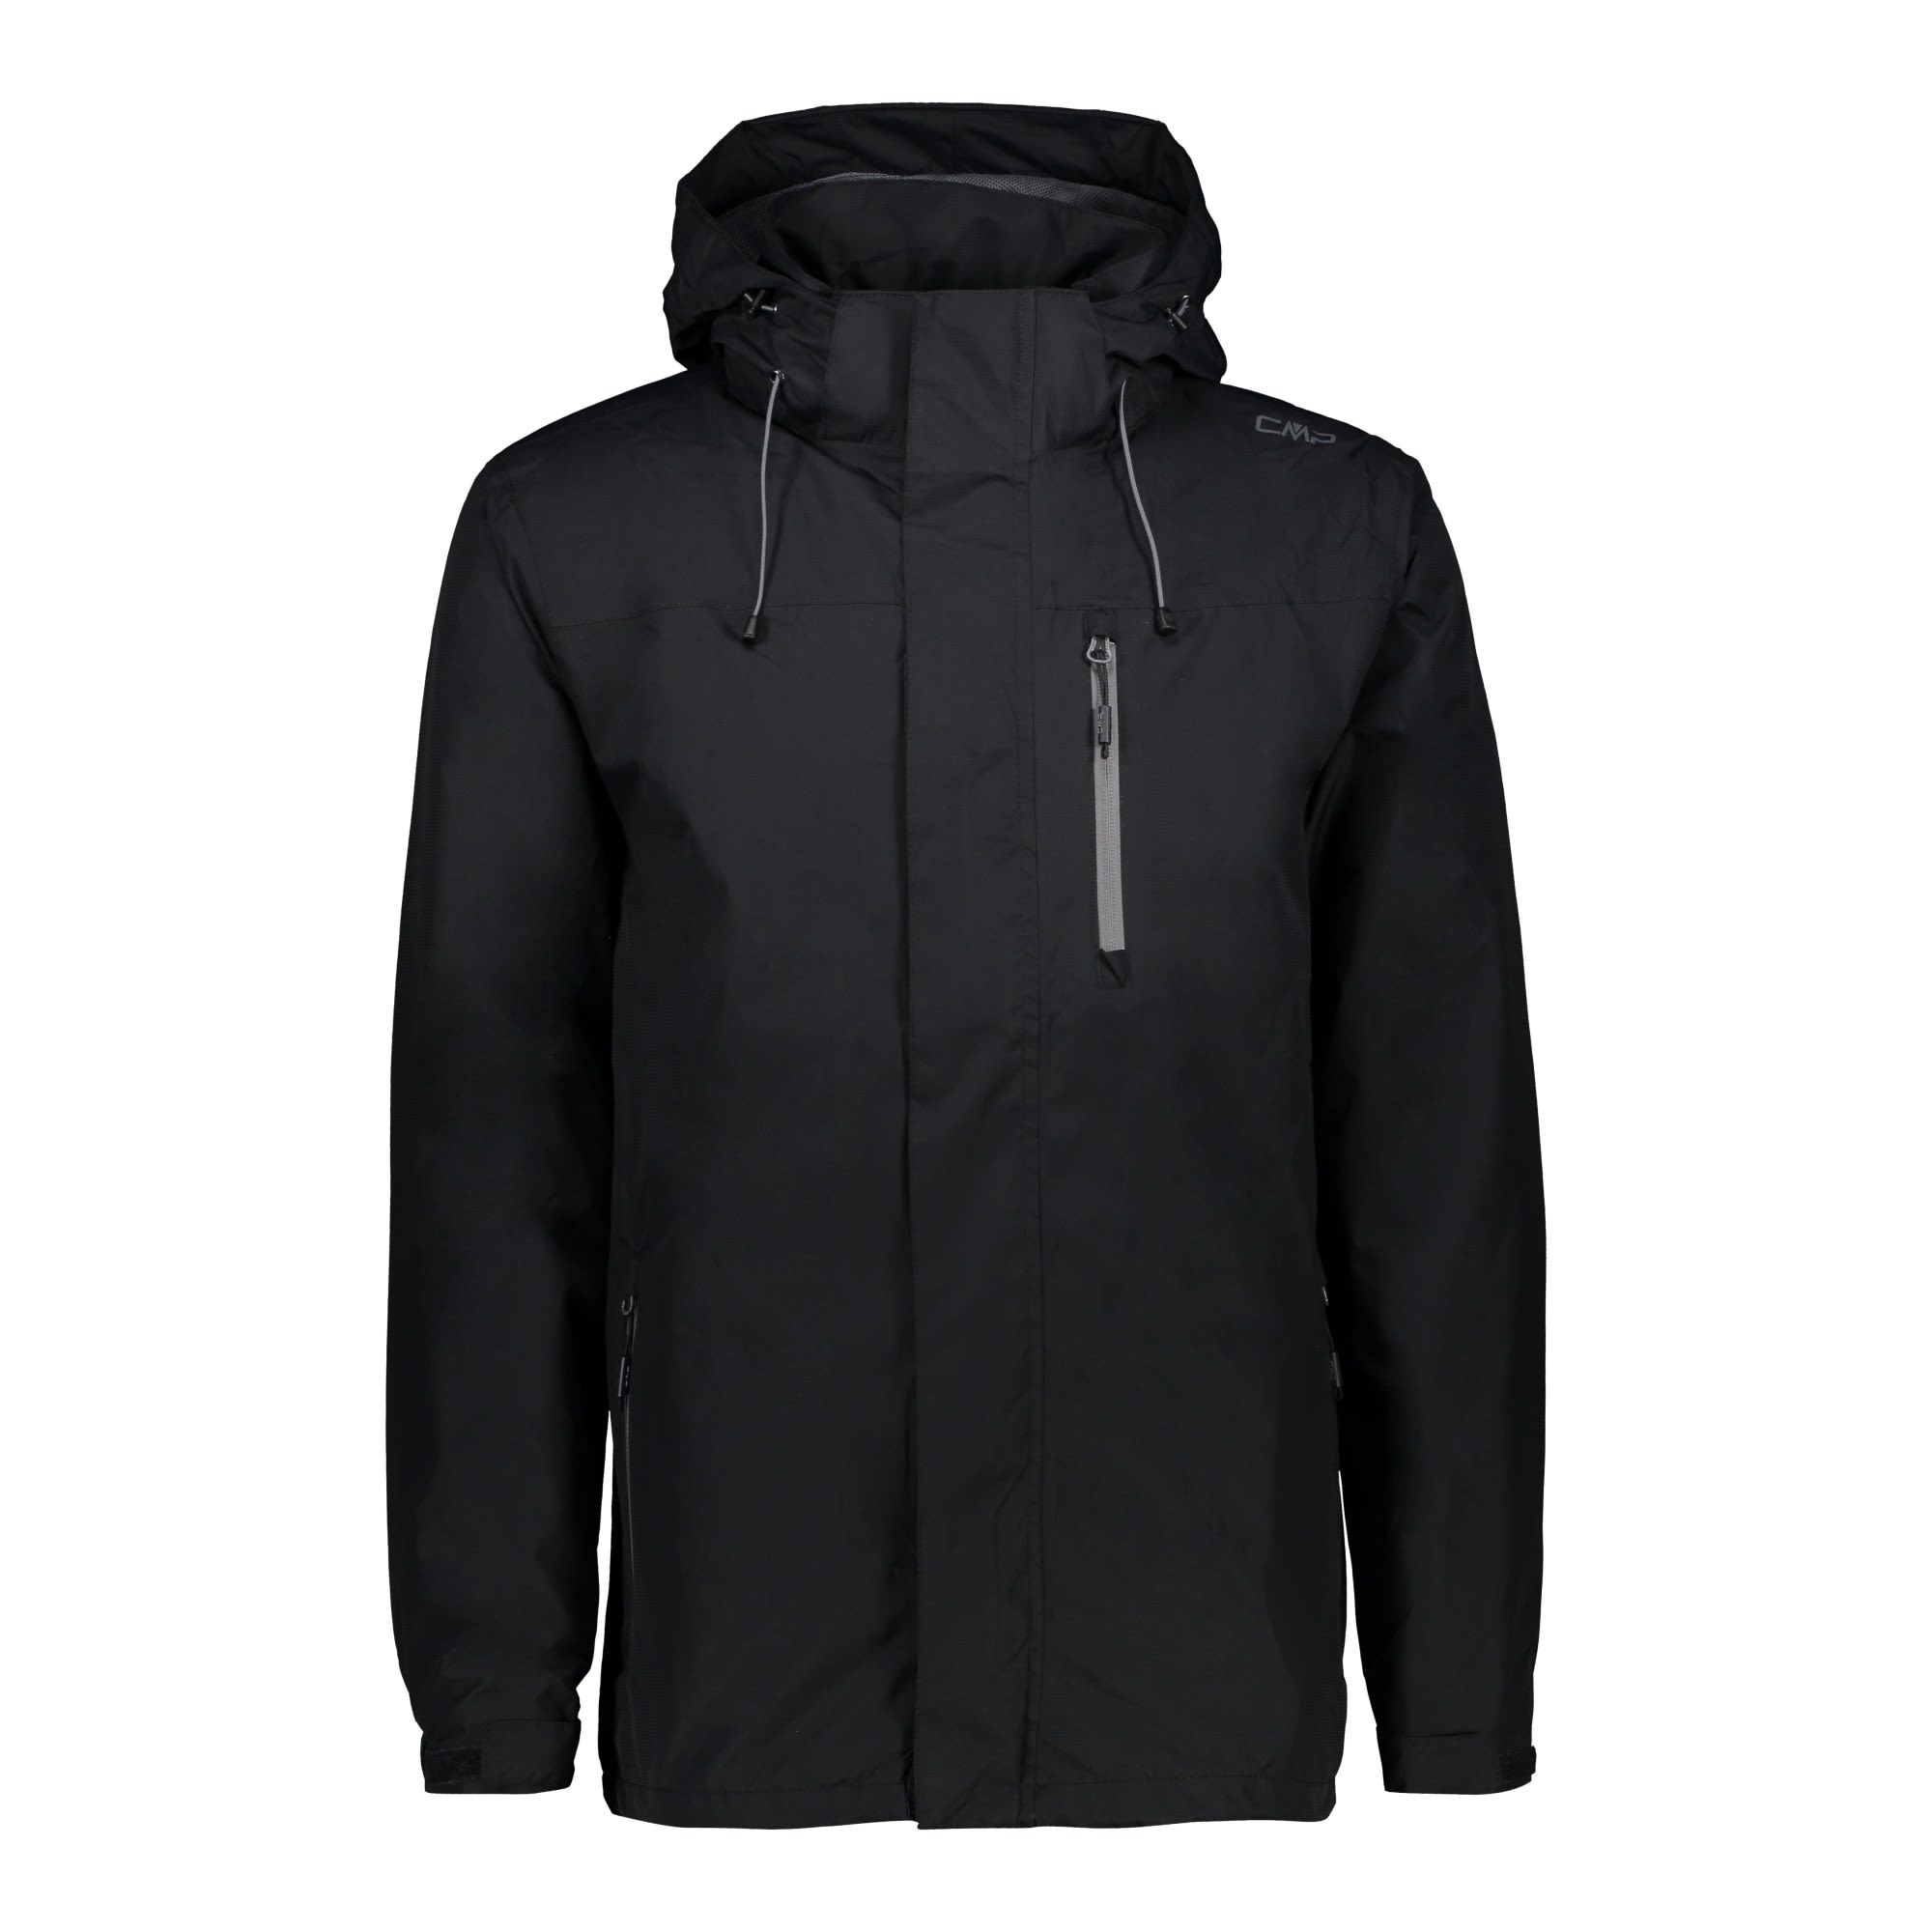 CMP Jacket Zip Hood Ventilation Grau- Male Regenjacken und Hardshells- Grsse 46 - Farbe Anthracite unter CMP